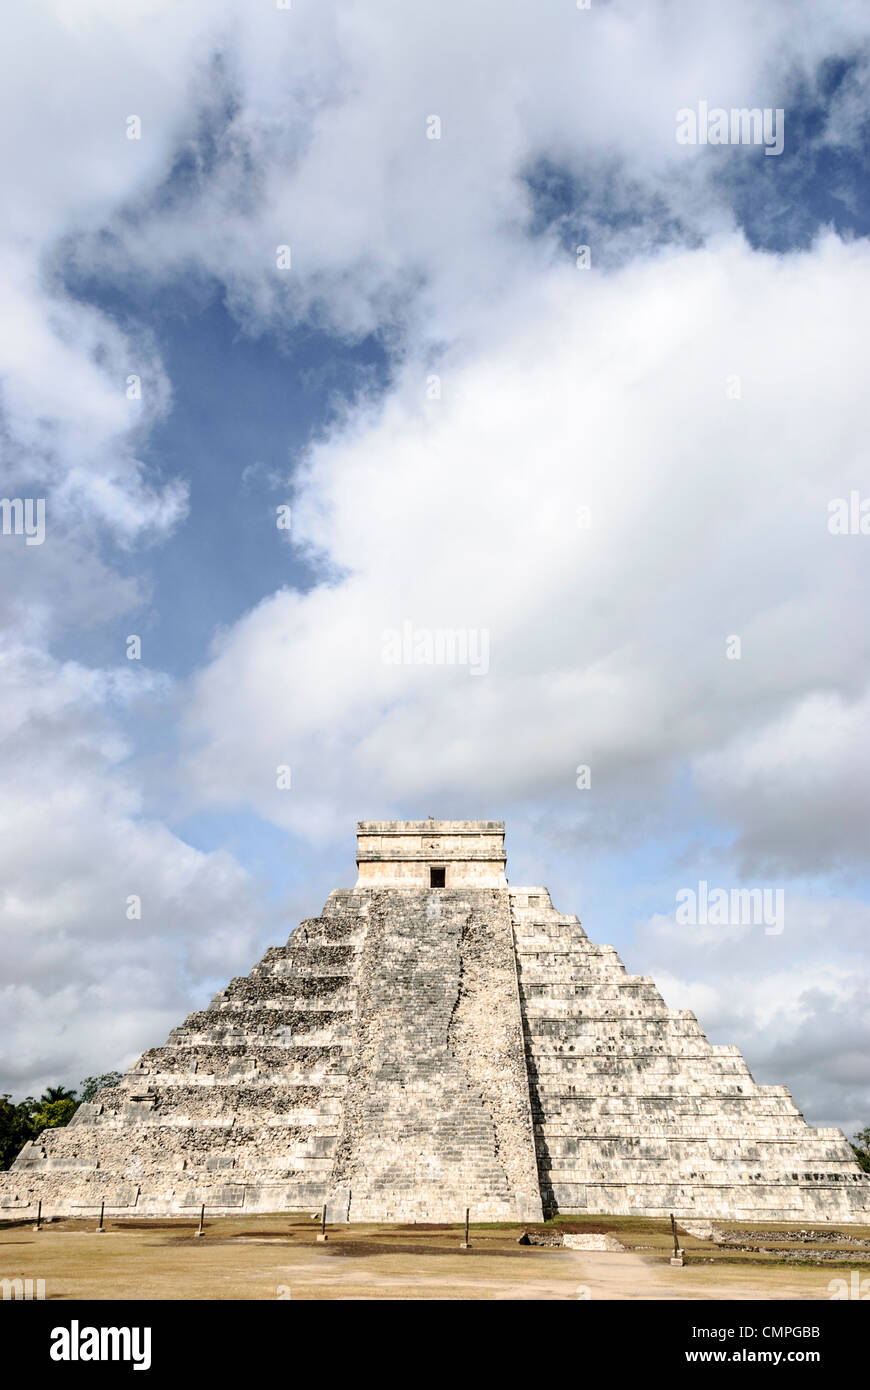 CHICHEN ITZA, MEXIQUE - La pyramide du Temple de Kukulkan (El Castillo) à la Zone archéologique de Chichen Itza, les ruines d'une importante ville de la civilisation Maya au coeur de la péninsule du Yucatan au Mexique. Banque D'Images